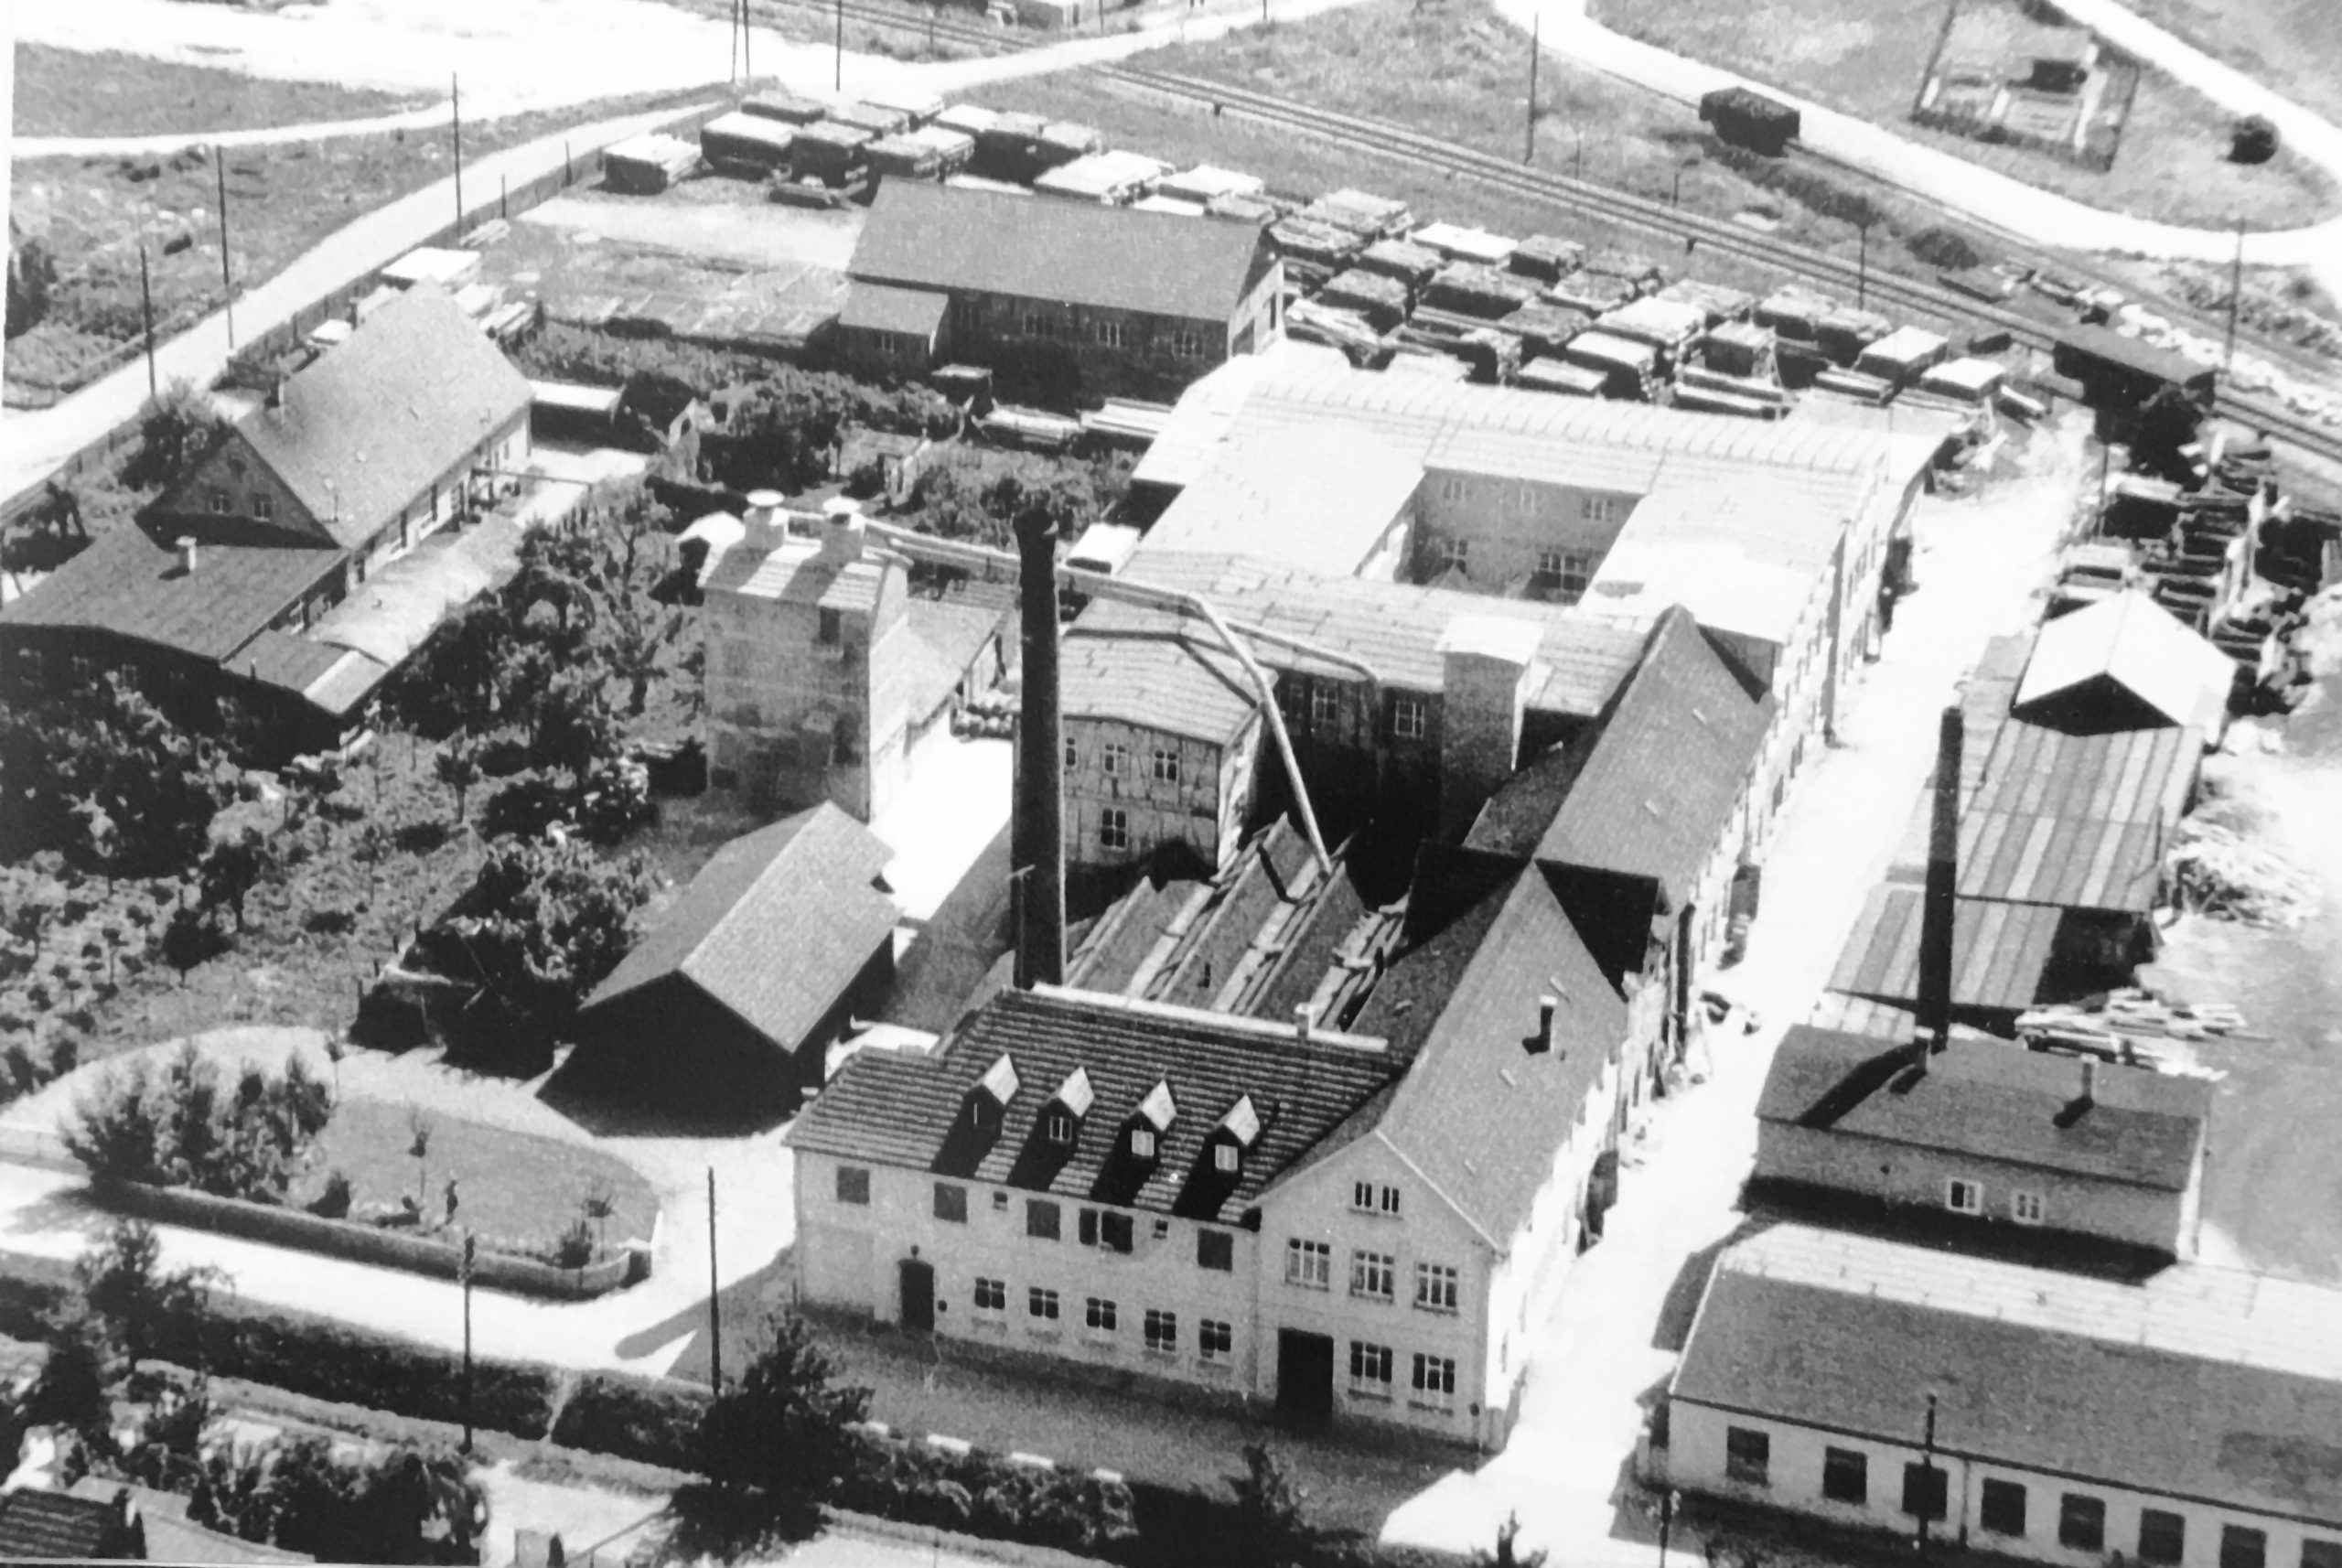 Luftaufnahme des Firmengebäude von princess Kinderwagen in Metzingen (evtl. aus dem Jahre 1940)